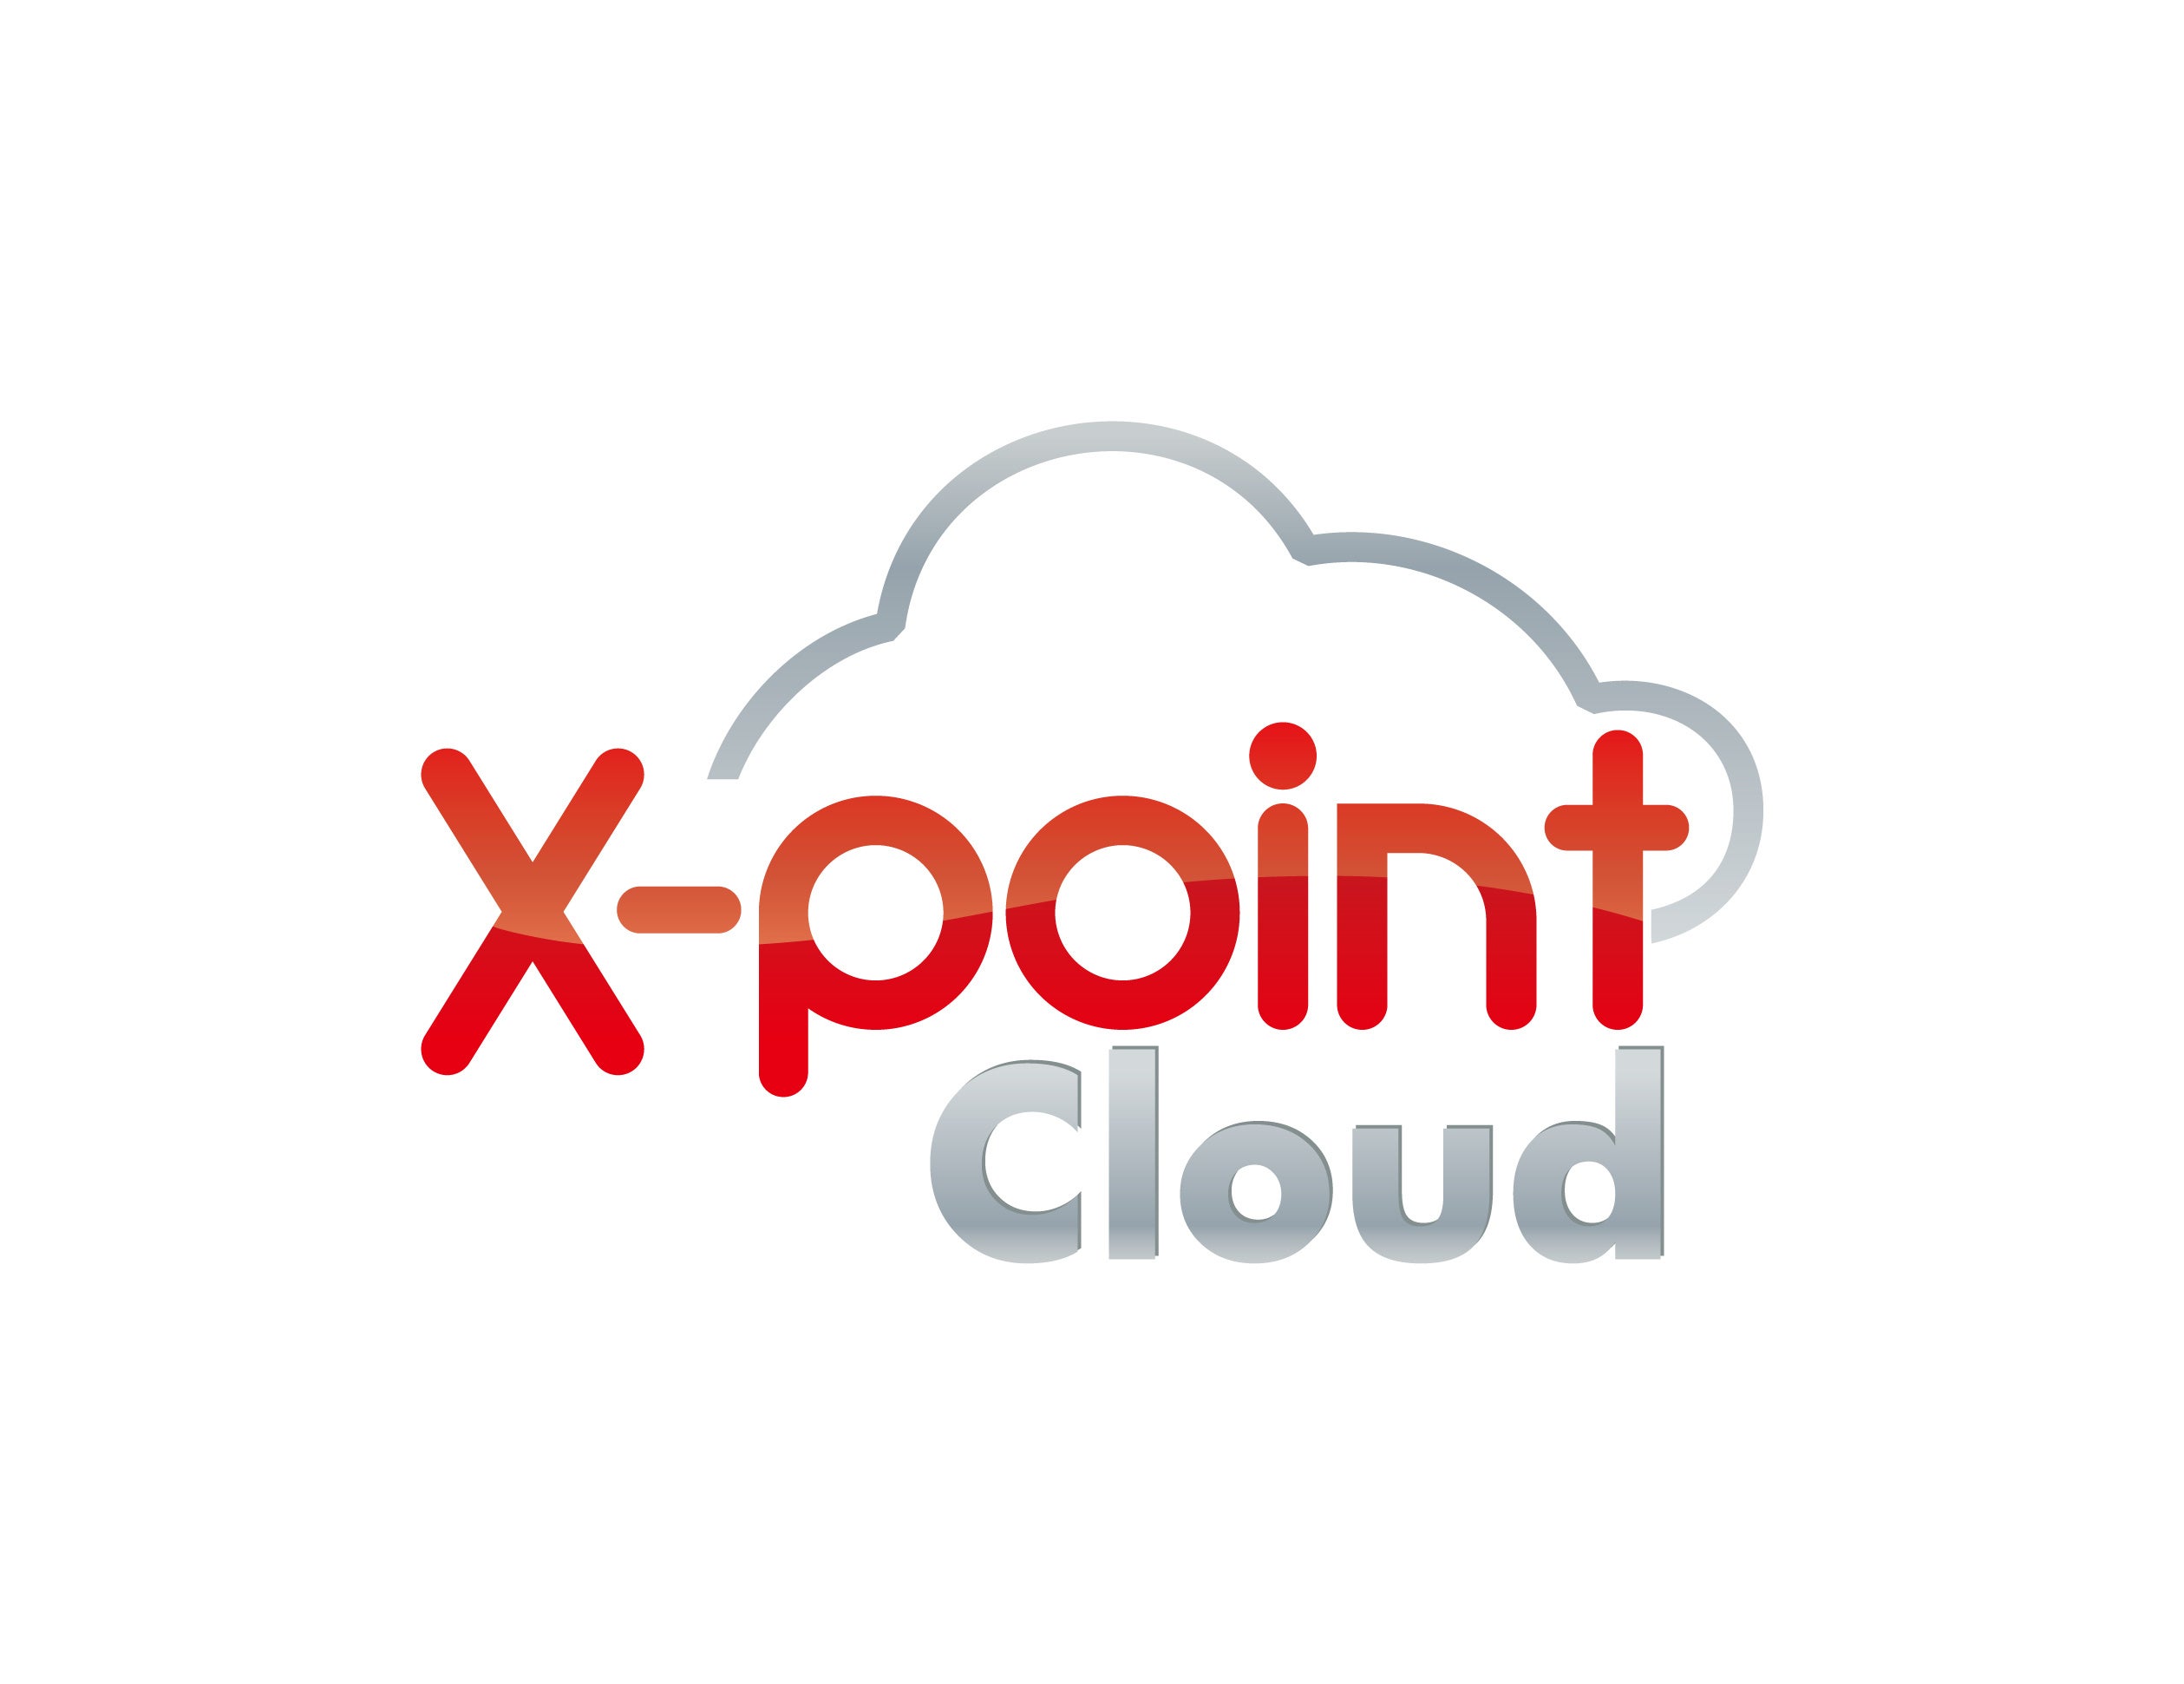 uAgileWorksvƁuX-point CloudvyITreview Grid Award 2024 Springz[Nt[VXeōōʂLEADER9A